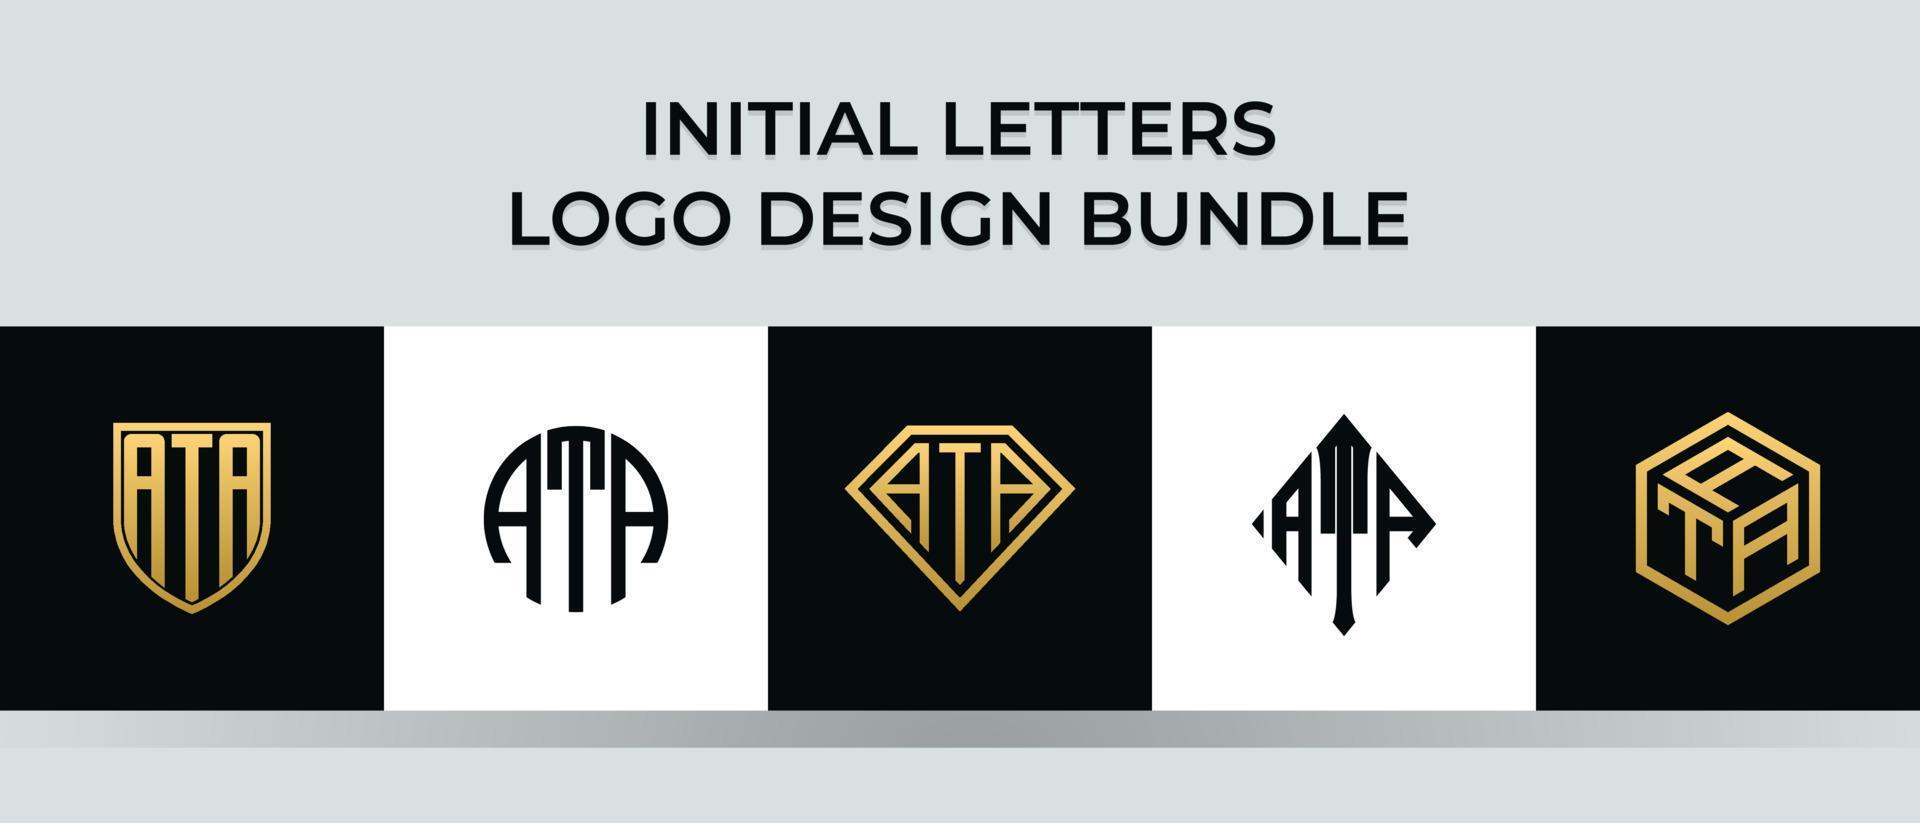 lettere iniziali ata logo design bundle vettore